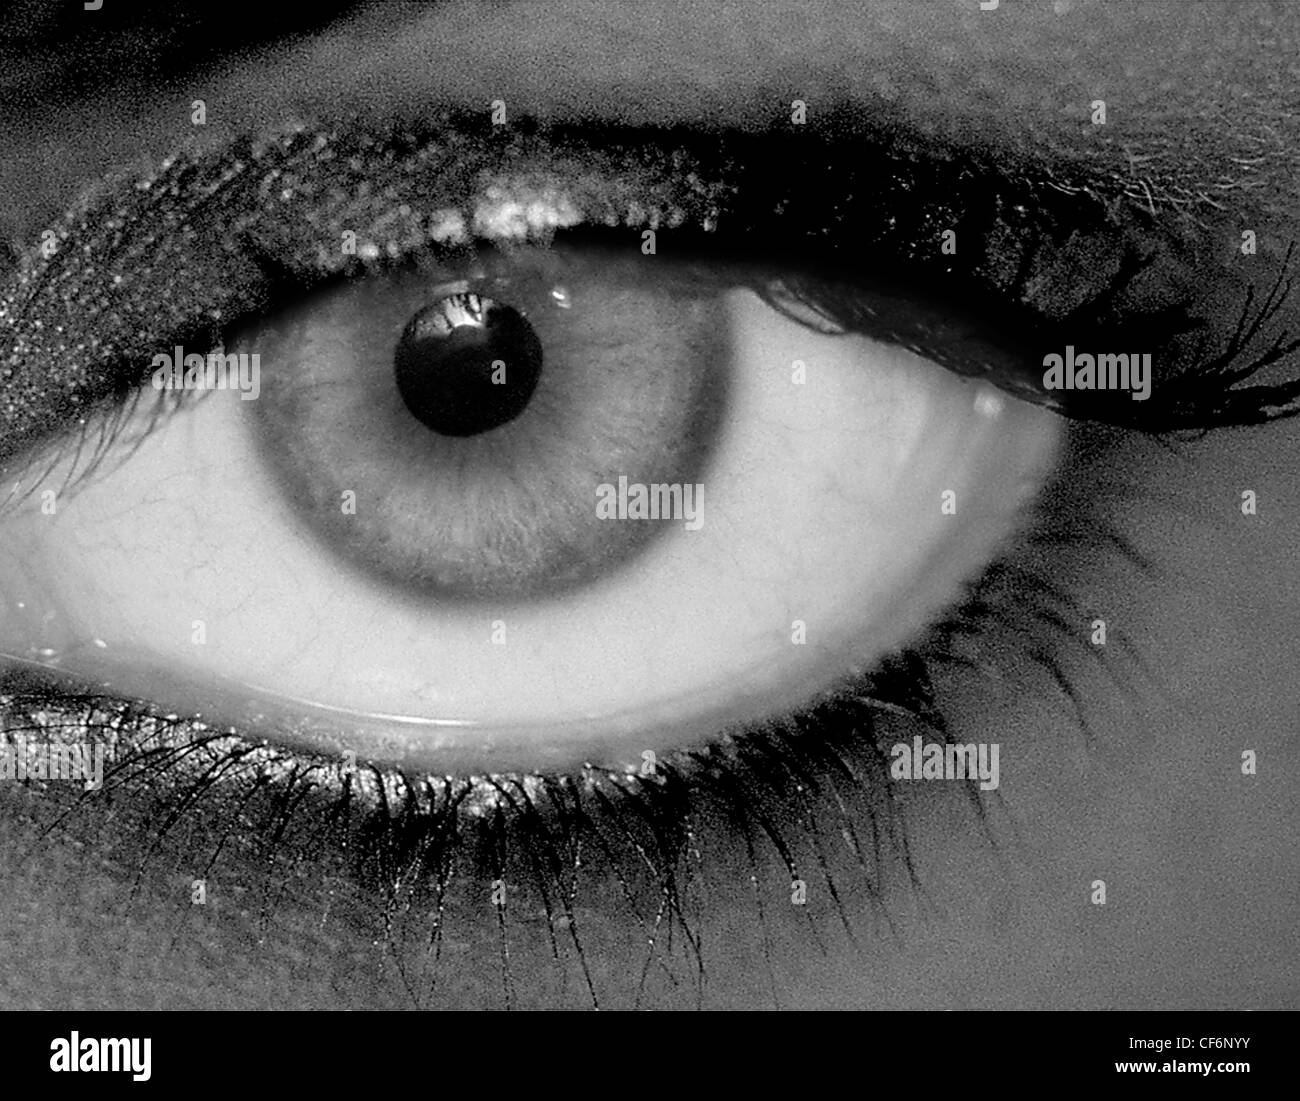 Occhio, Femmina, close-up, drammatico, in bianco e nero fotografia orizzontale Foto Stock